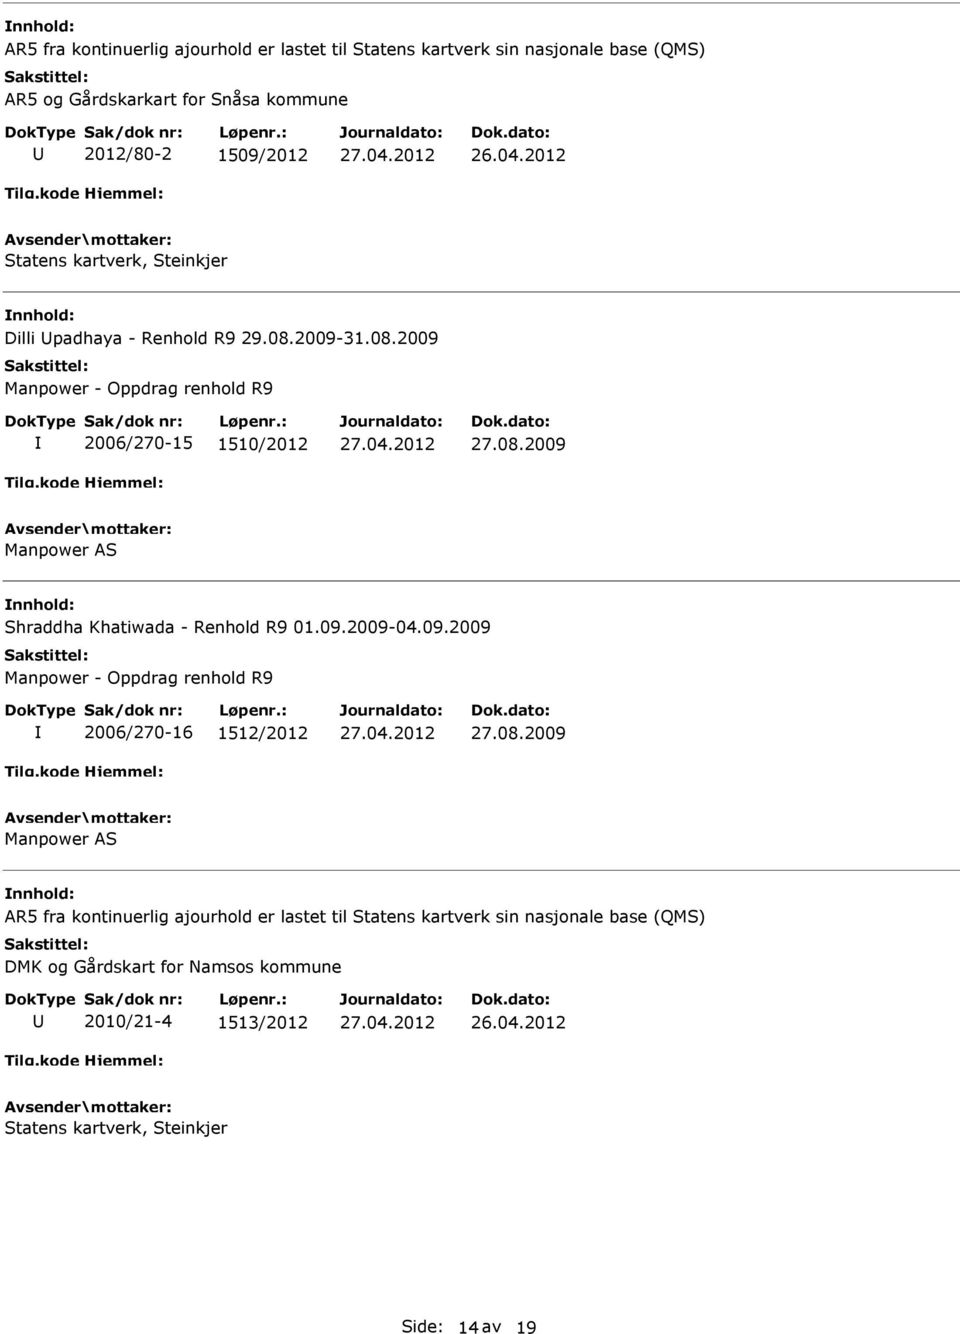 09.2009-04.09.2009 Manpower - Oppdrag renhold R9 2006/270-16 1512/2012 27.08.